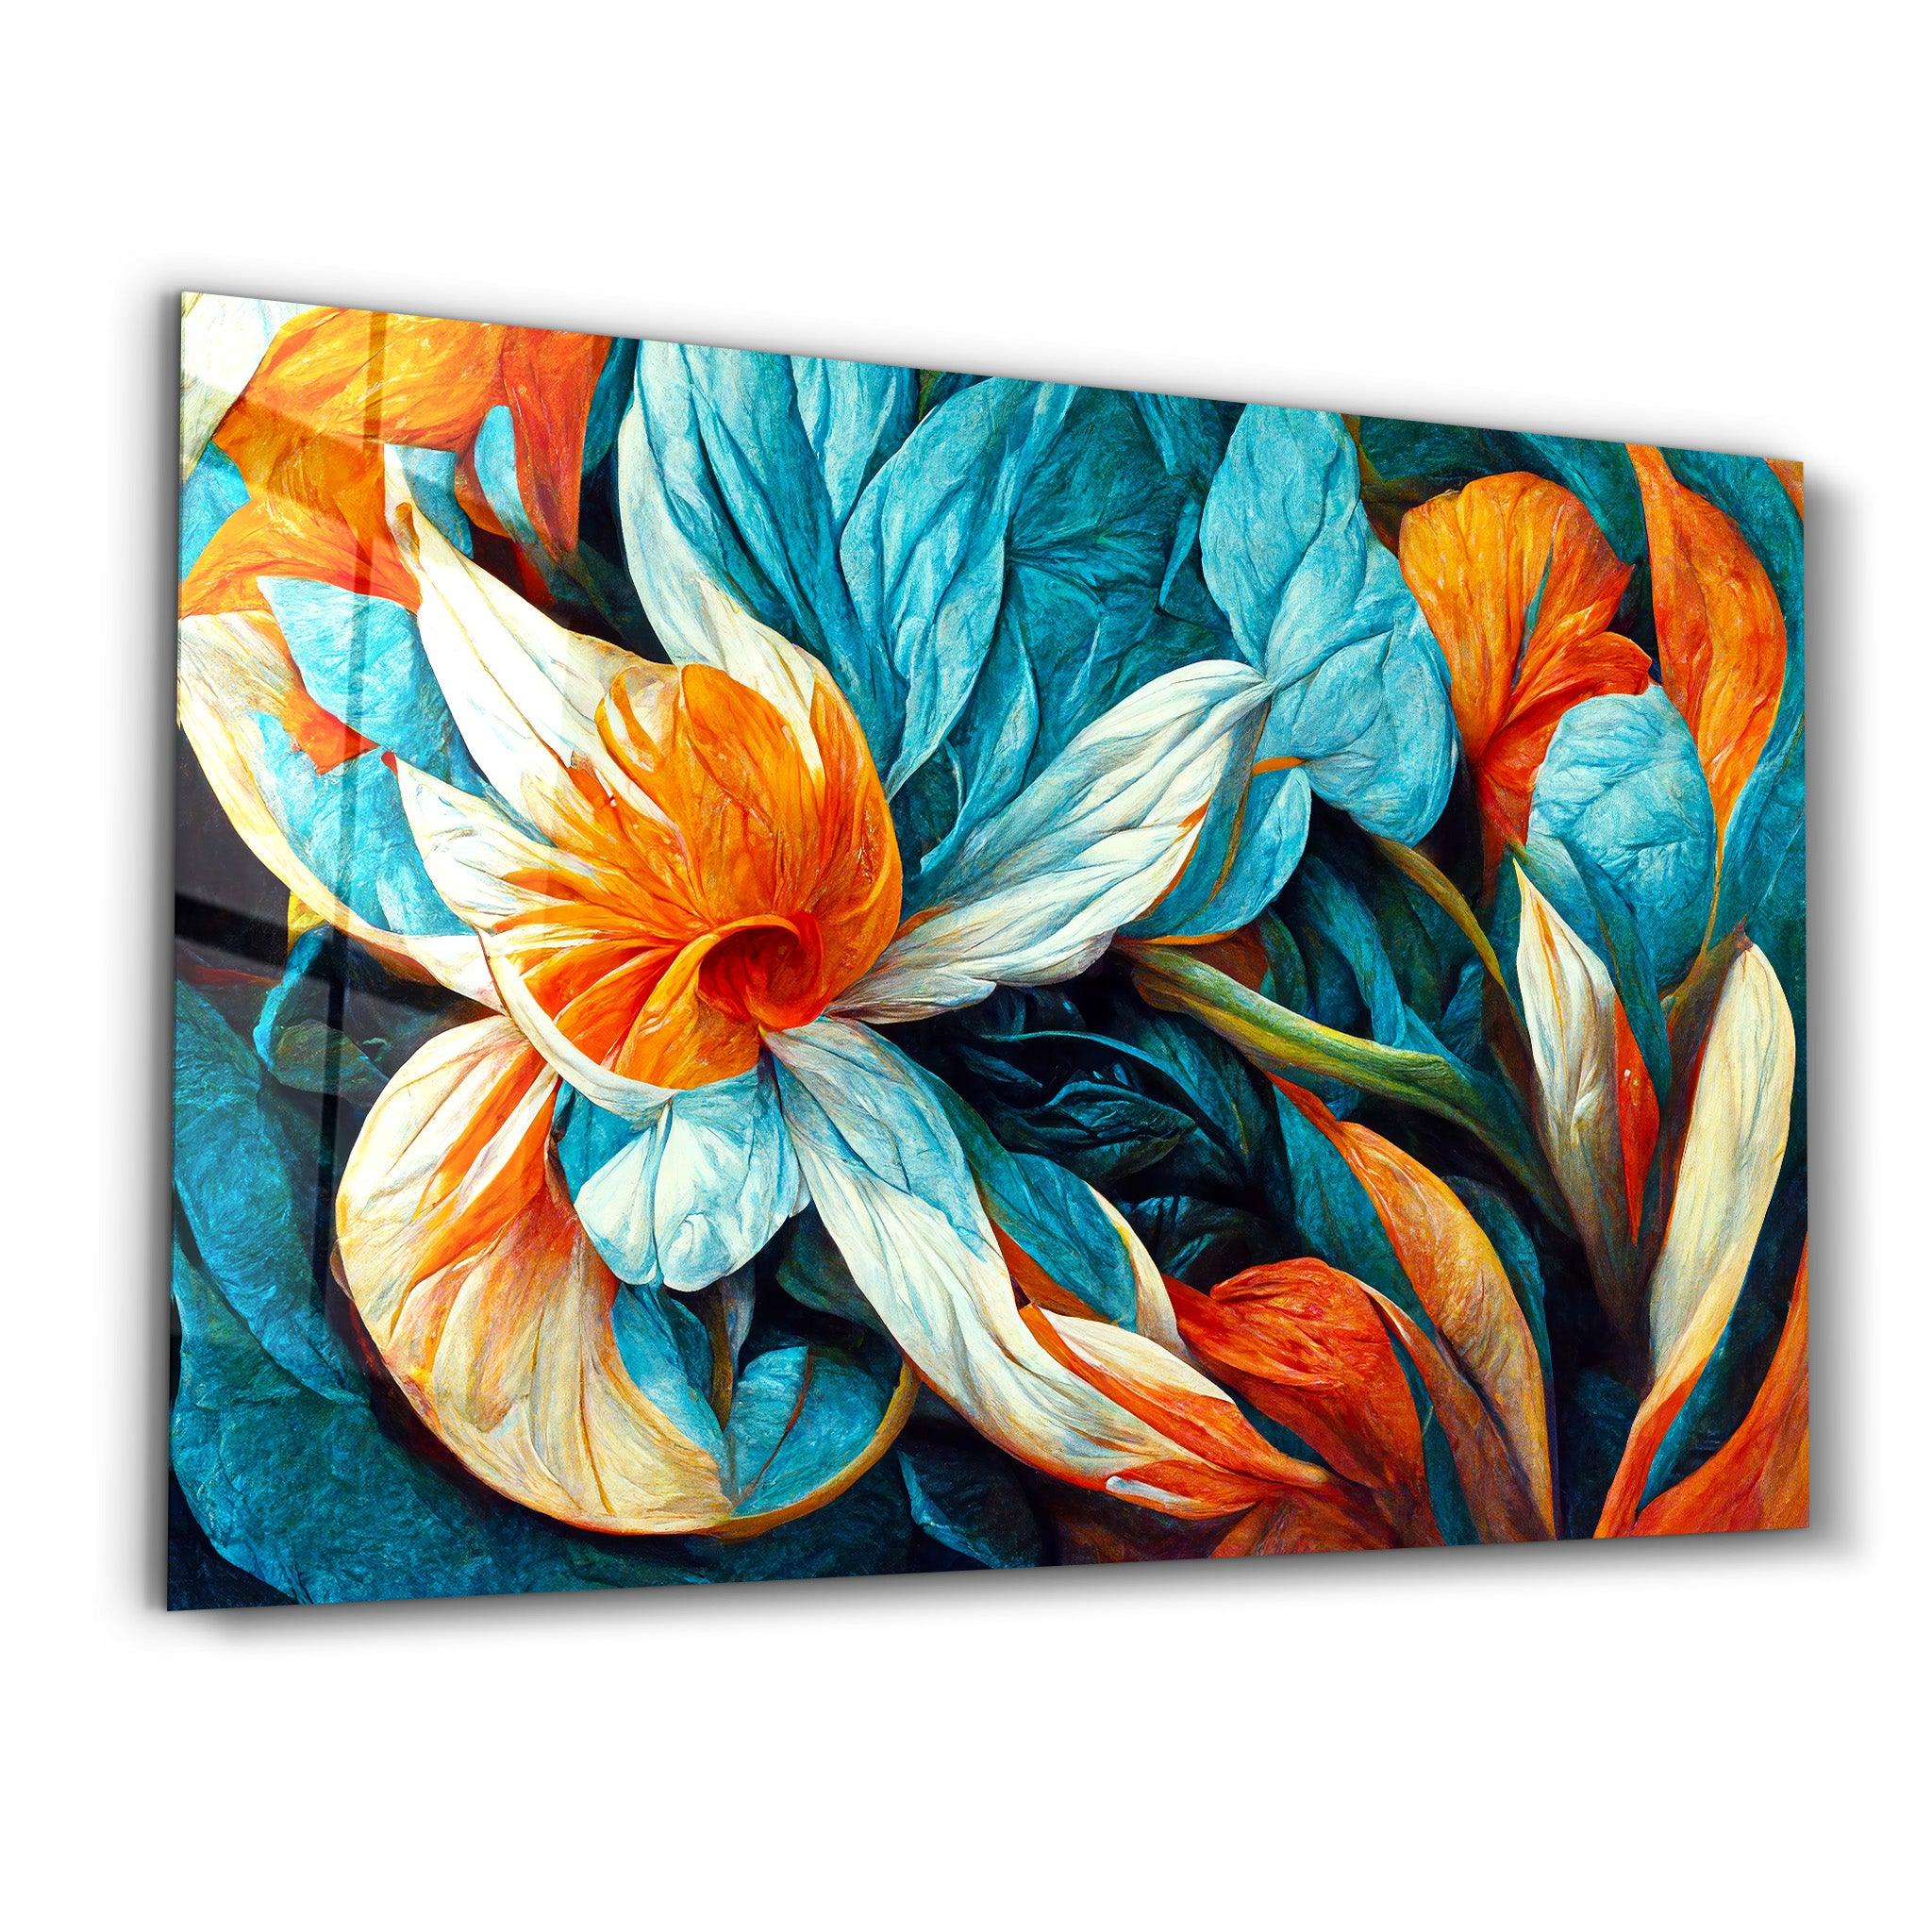 Flowers of Secret Garden 3 | Designers Collection Glass Wall Art - ArtDesigna Glass Printing Wall Art